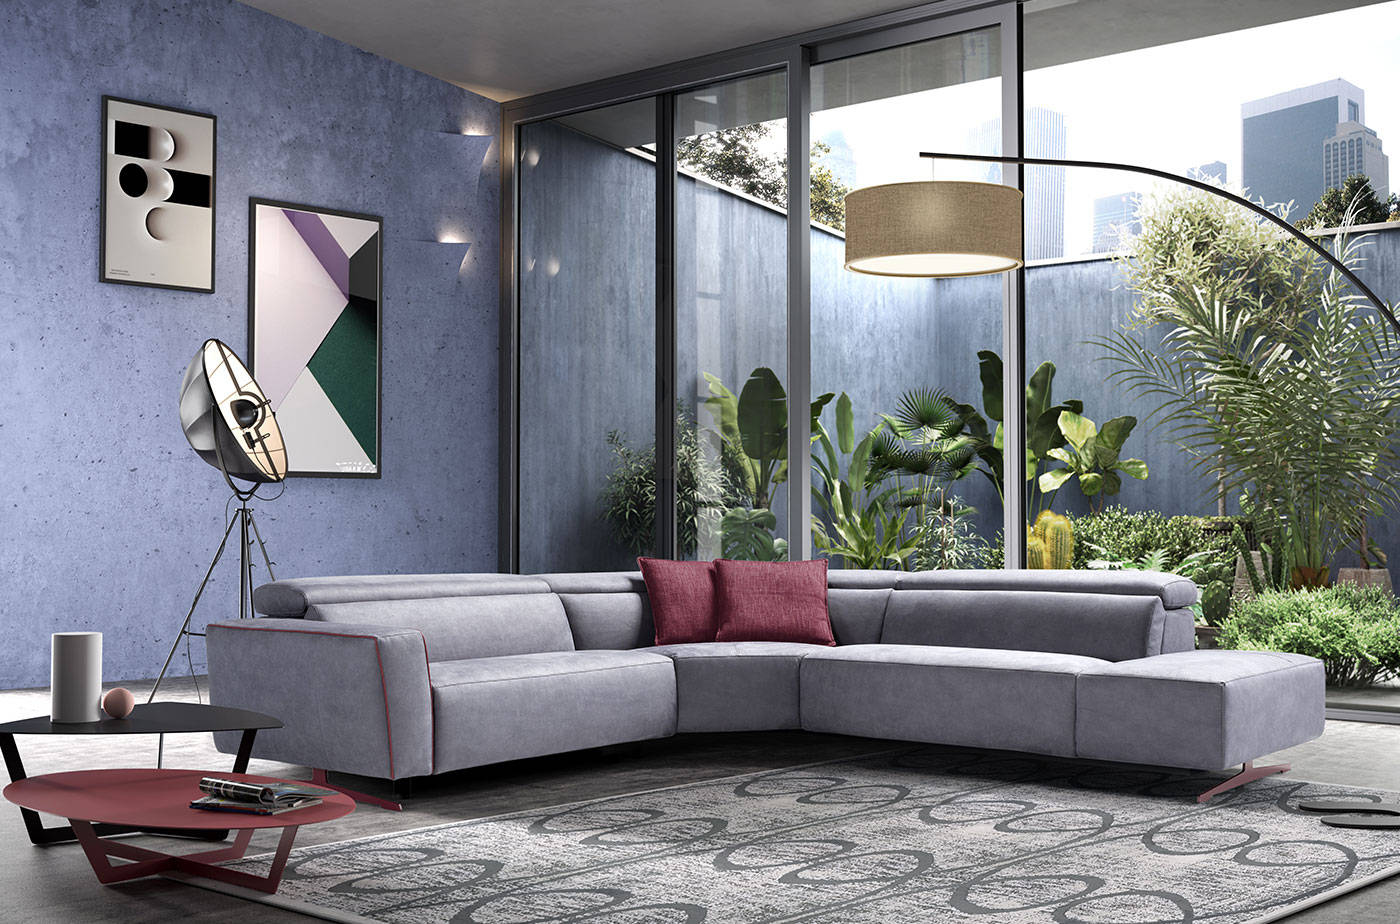 意大利egoitaliano沙发品牌,拥有意大利原创设计,专注皮沙发的设计与